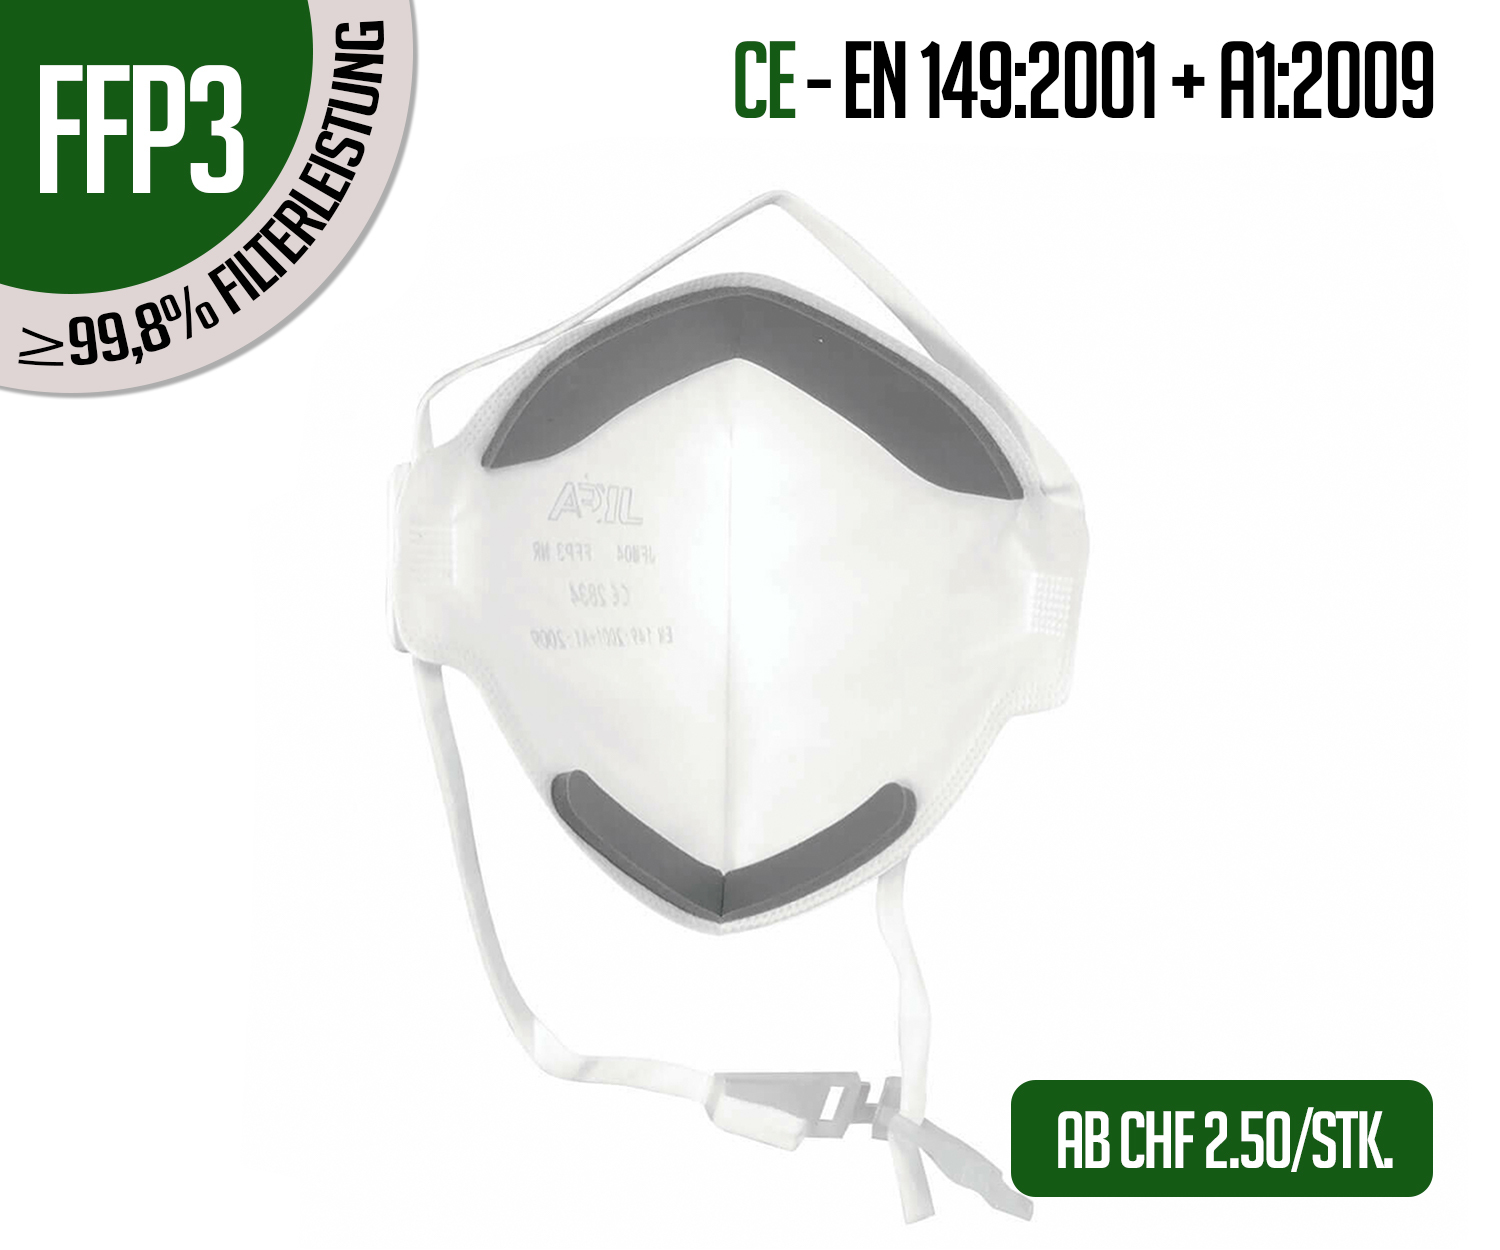 Schutzmasken online Shop | FFP2 Masken für CHF 0.49 kaufen